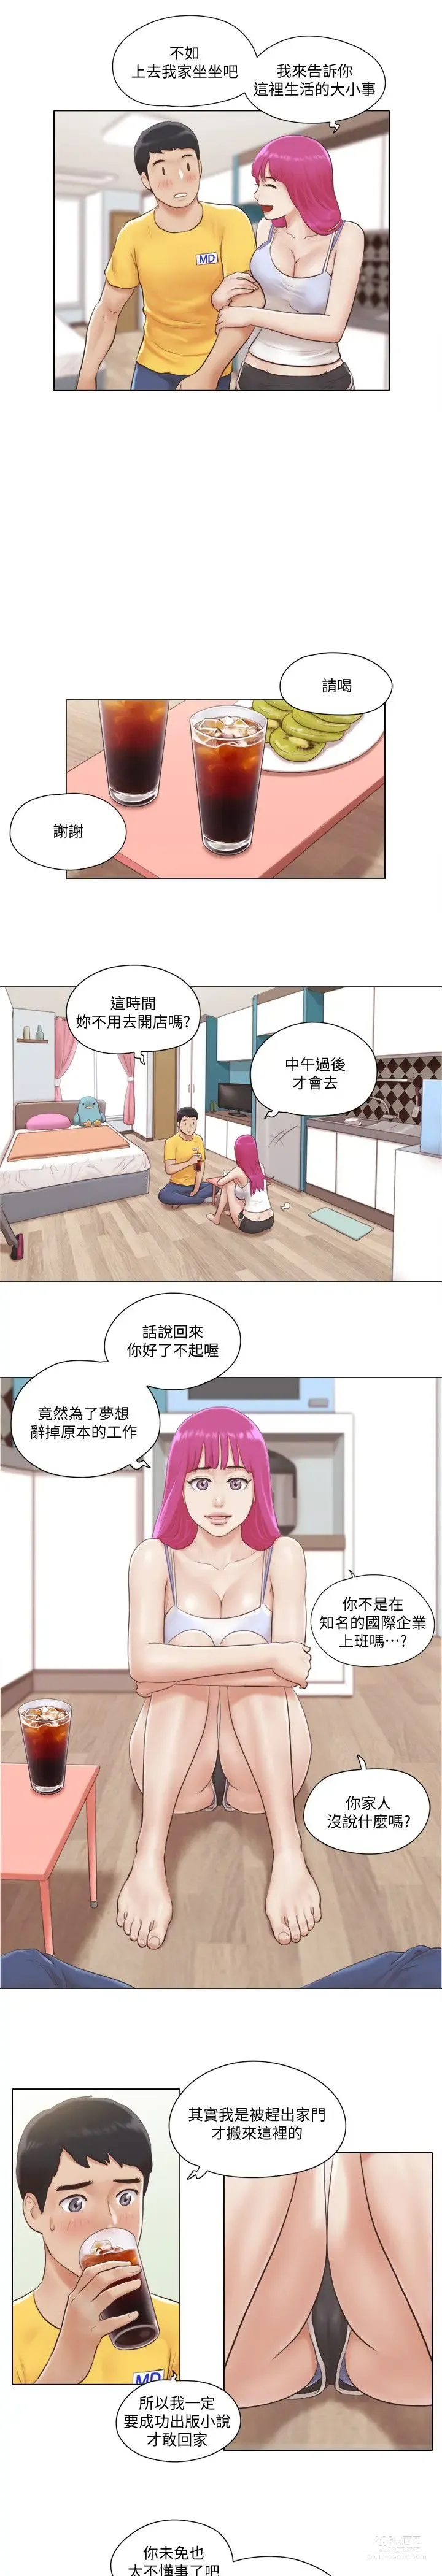 Page 32 of manga 單身女子公寓 1-41 END